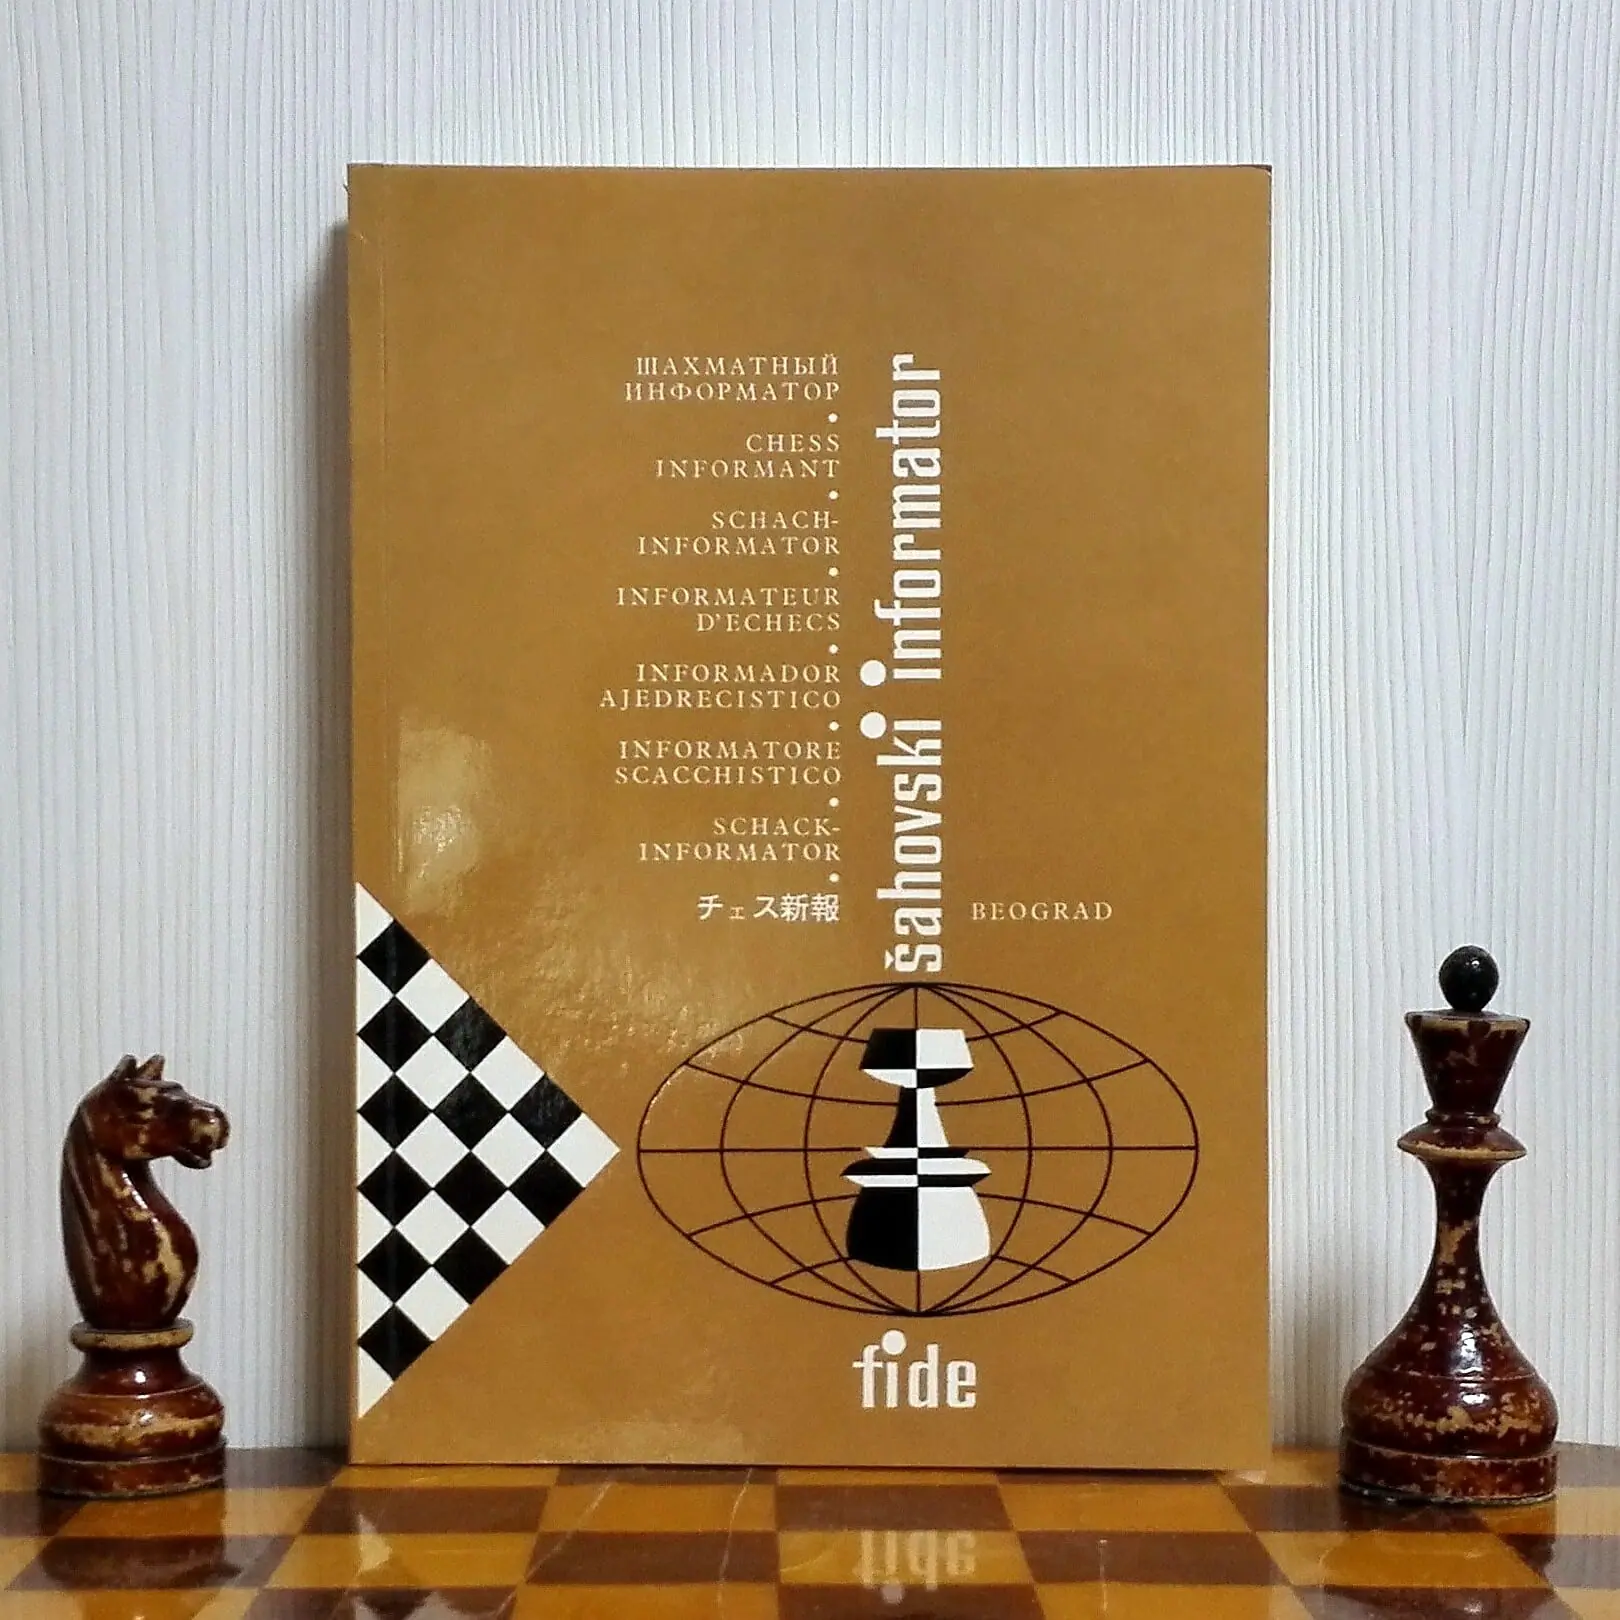 chess informant.jpg